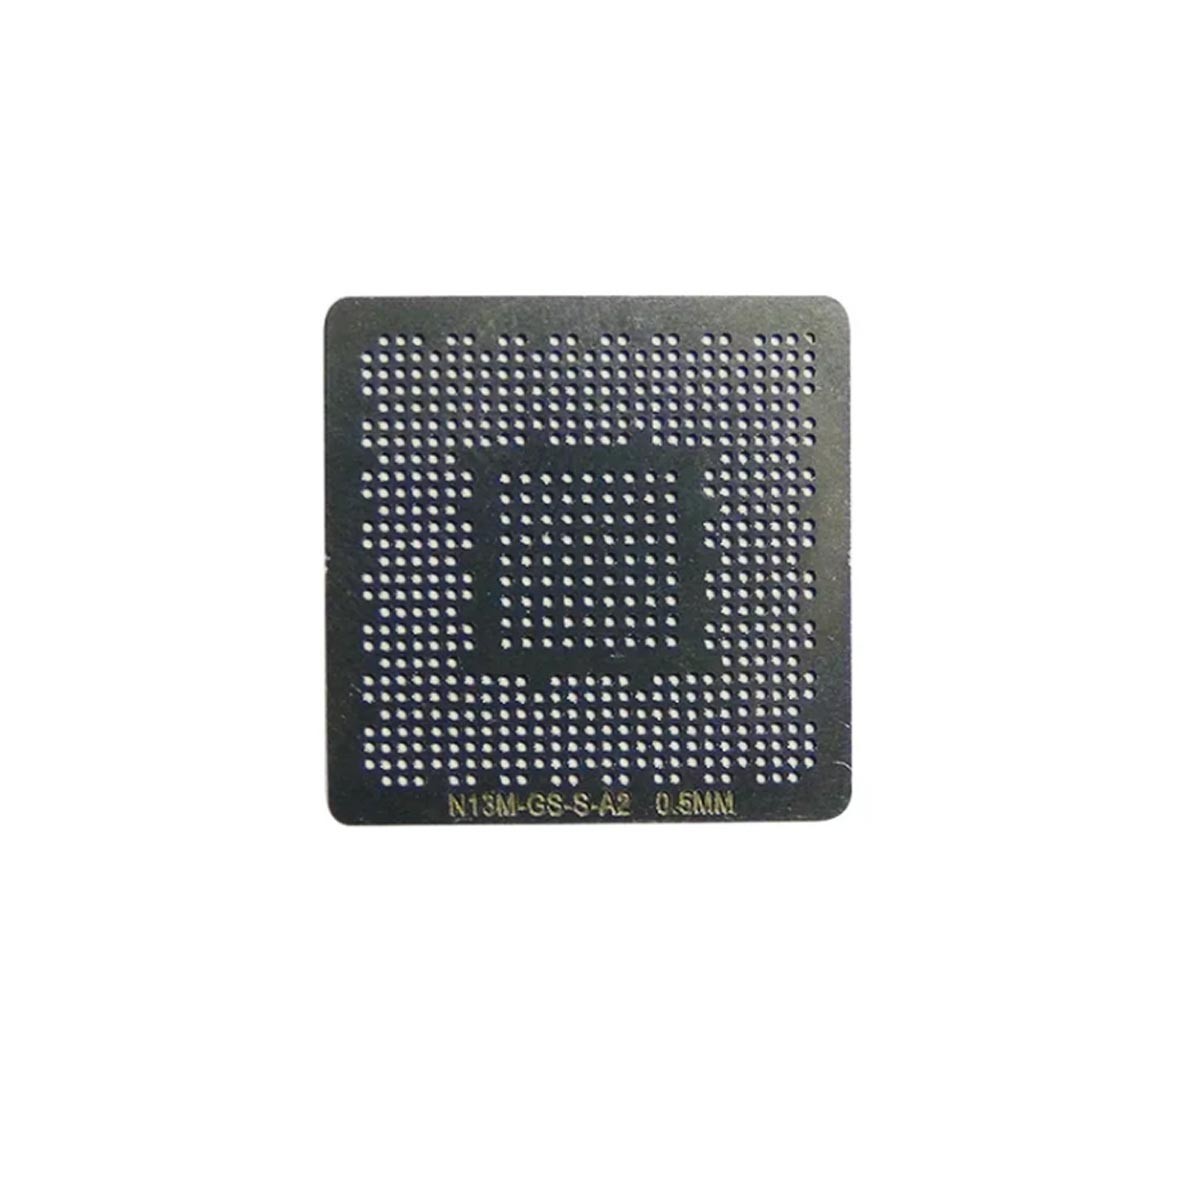 Stencil Calor Direto Nvidia N13M-GS-S-A2 N14M-GL-S-A2 N14P-GV2-S-A1 N13P-GV2-S-A2 0,50 N13M-GS-B-A2 G39